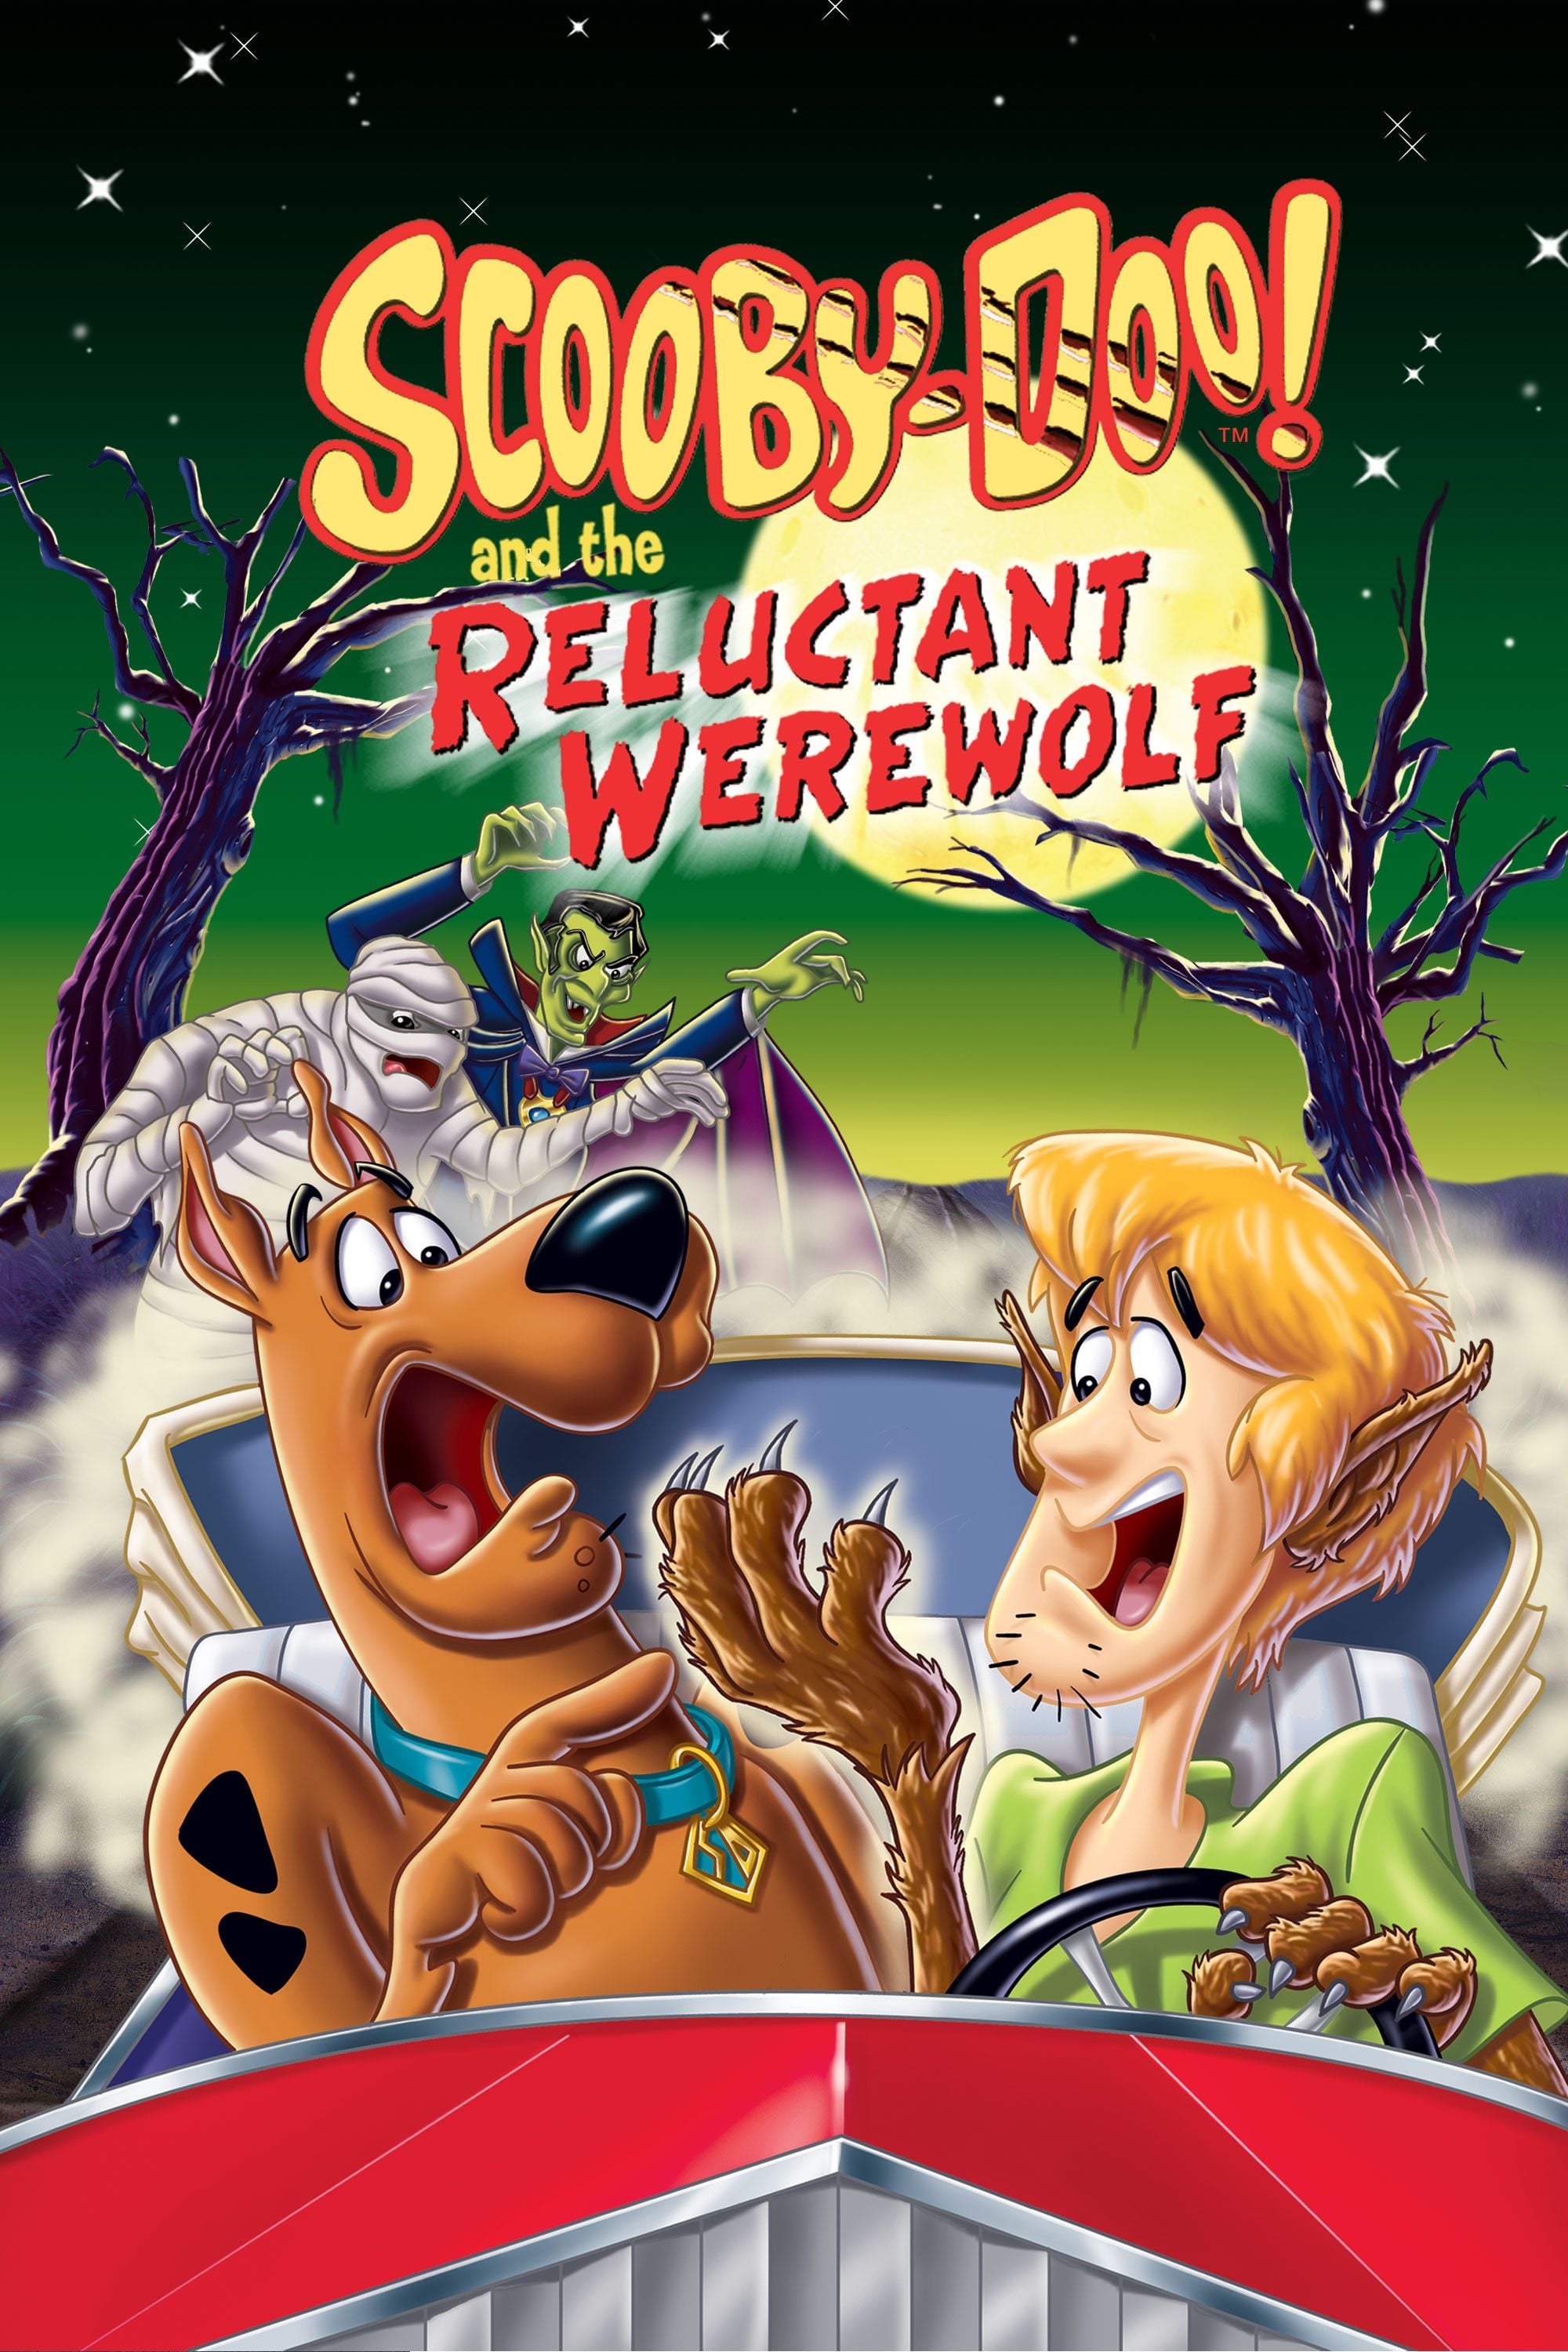 Scooby-Doo ! et le rallye des monstres (1988)